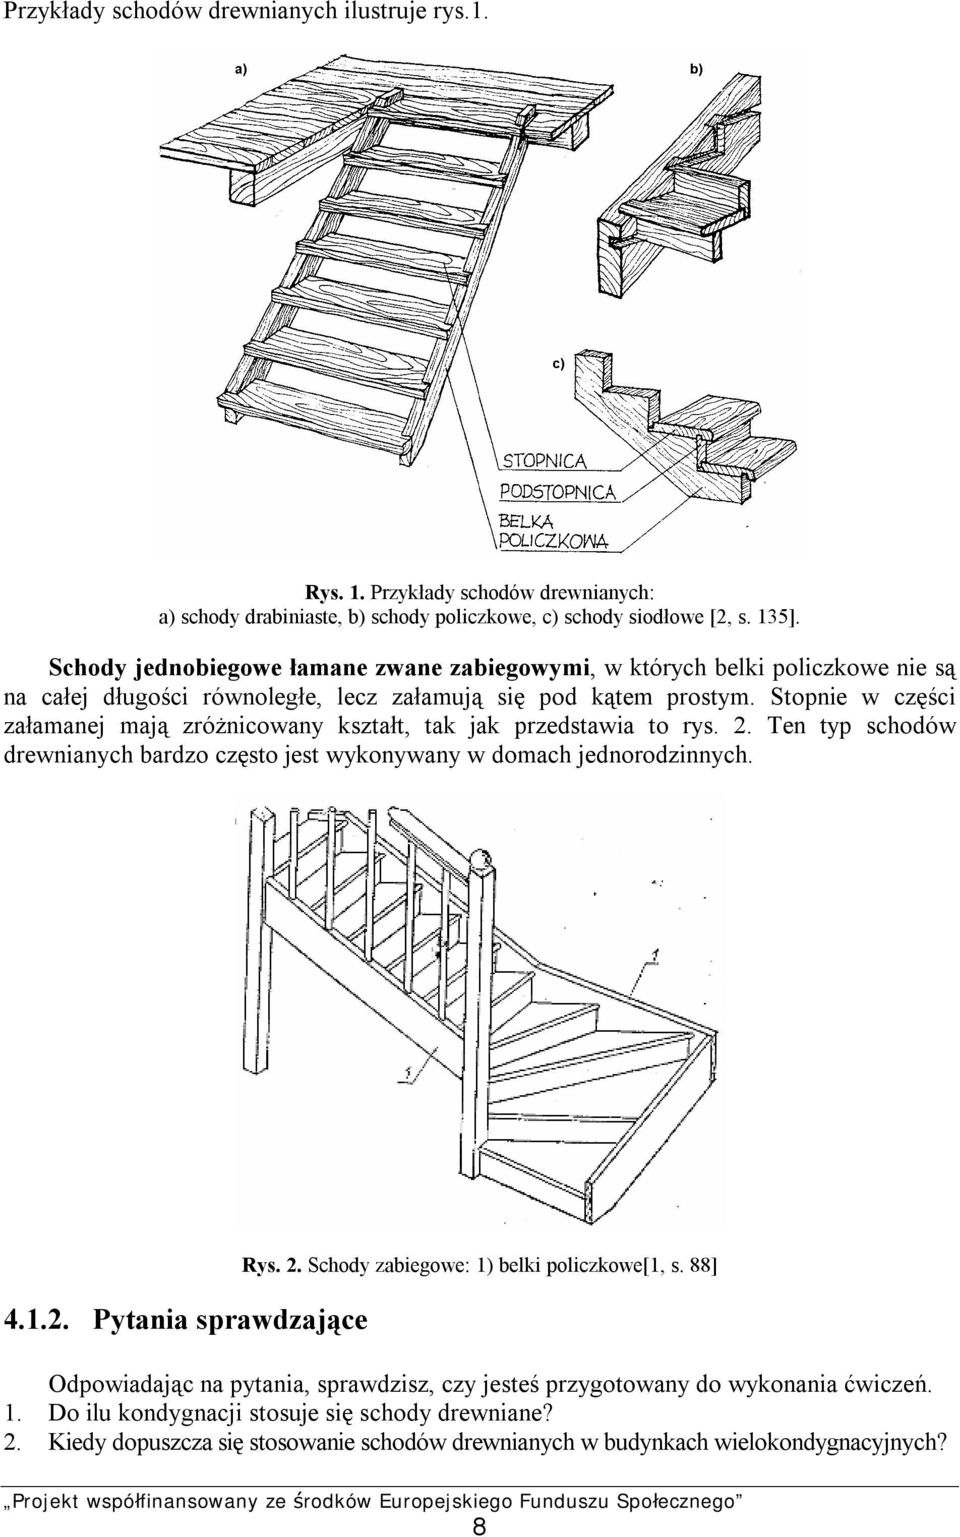 Stopnie w części załamanej mają zróżnicowany kształt, tak jak przedstawia to rys. 2. Ten typ schodów drewnianych bardzo często jest wykonywany w domach jednorodzinnych. 4.1.2. Pytania sprawdzające Rys.